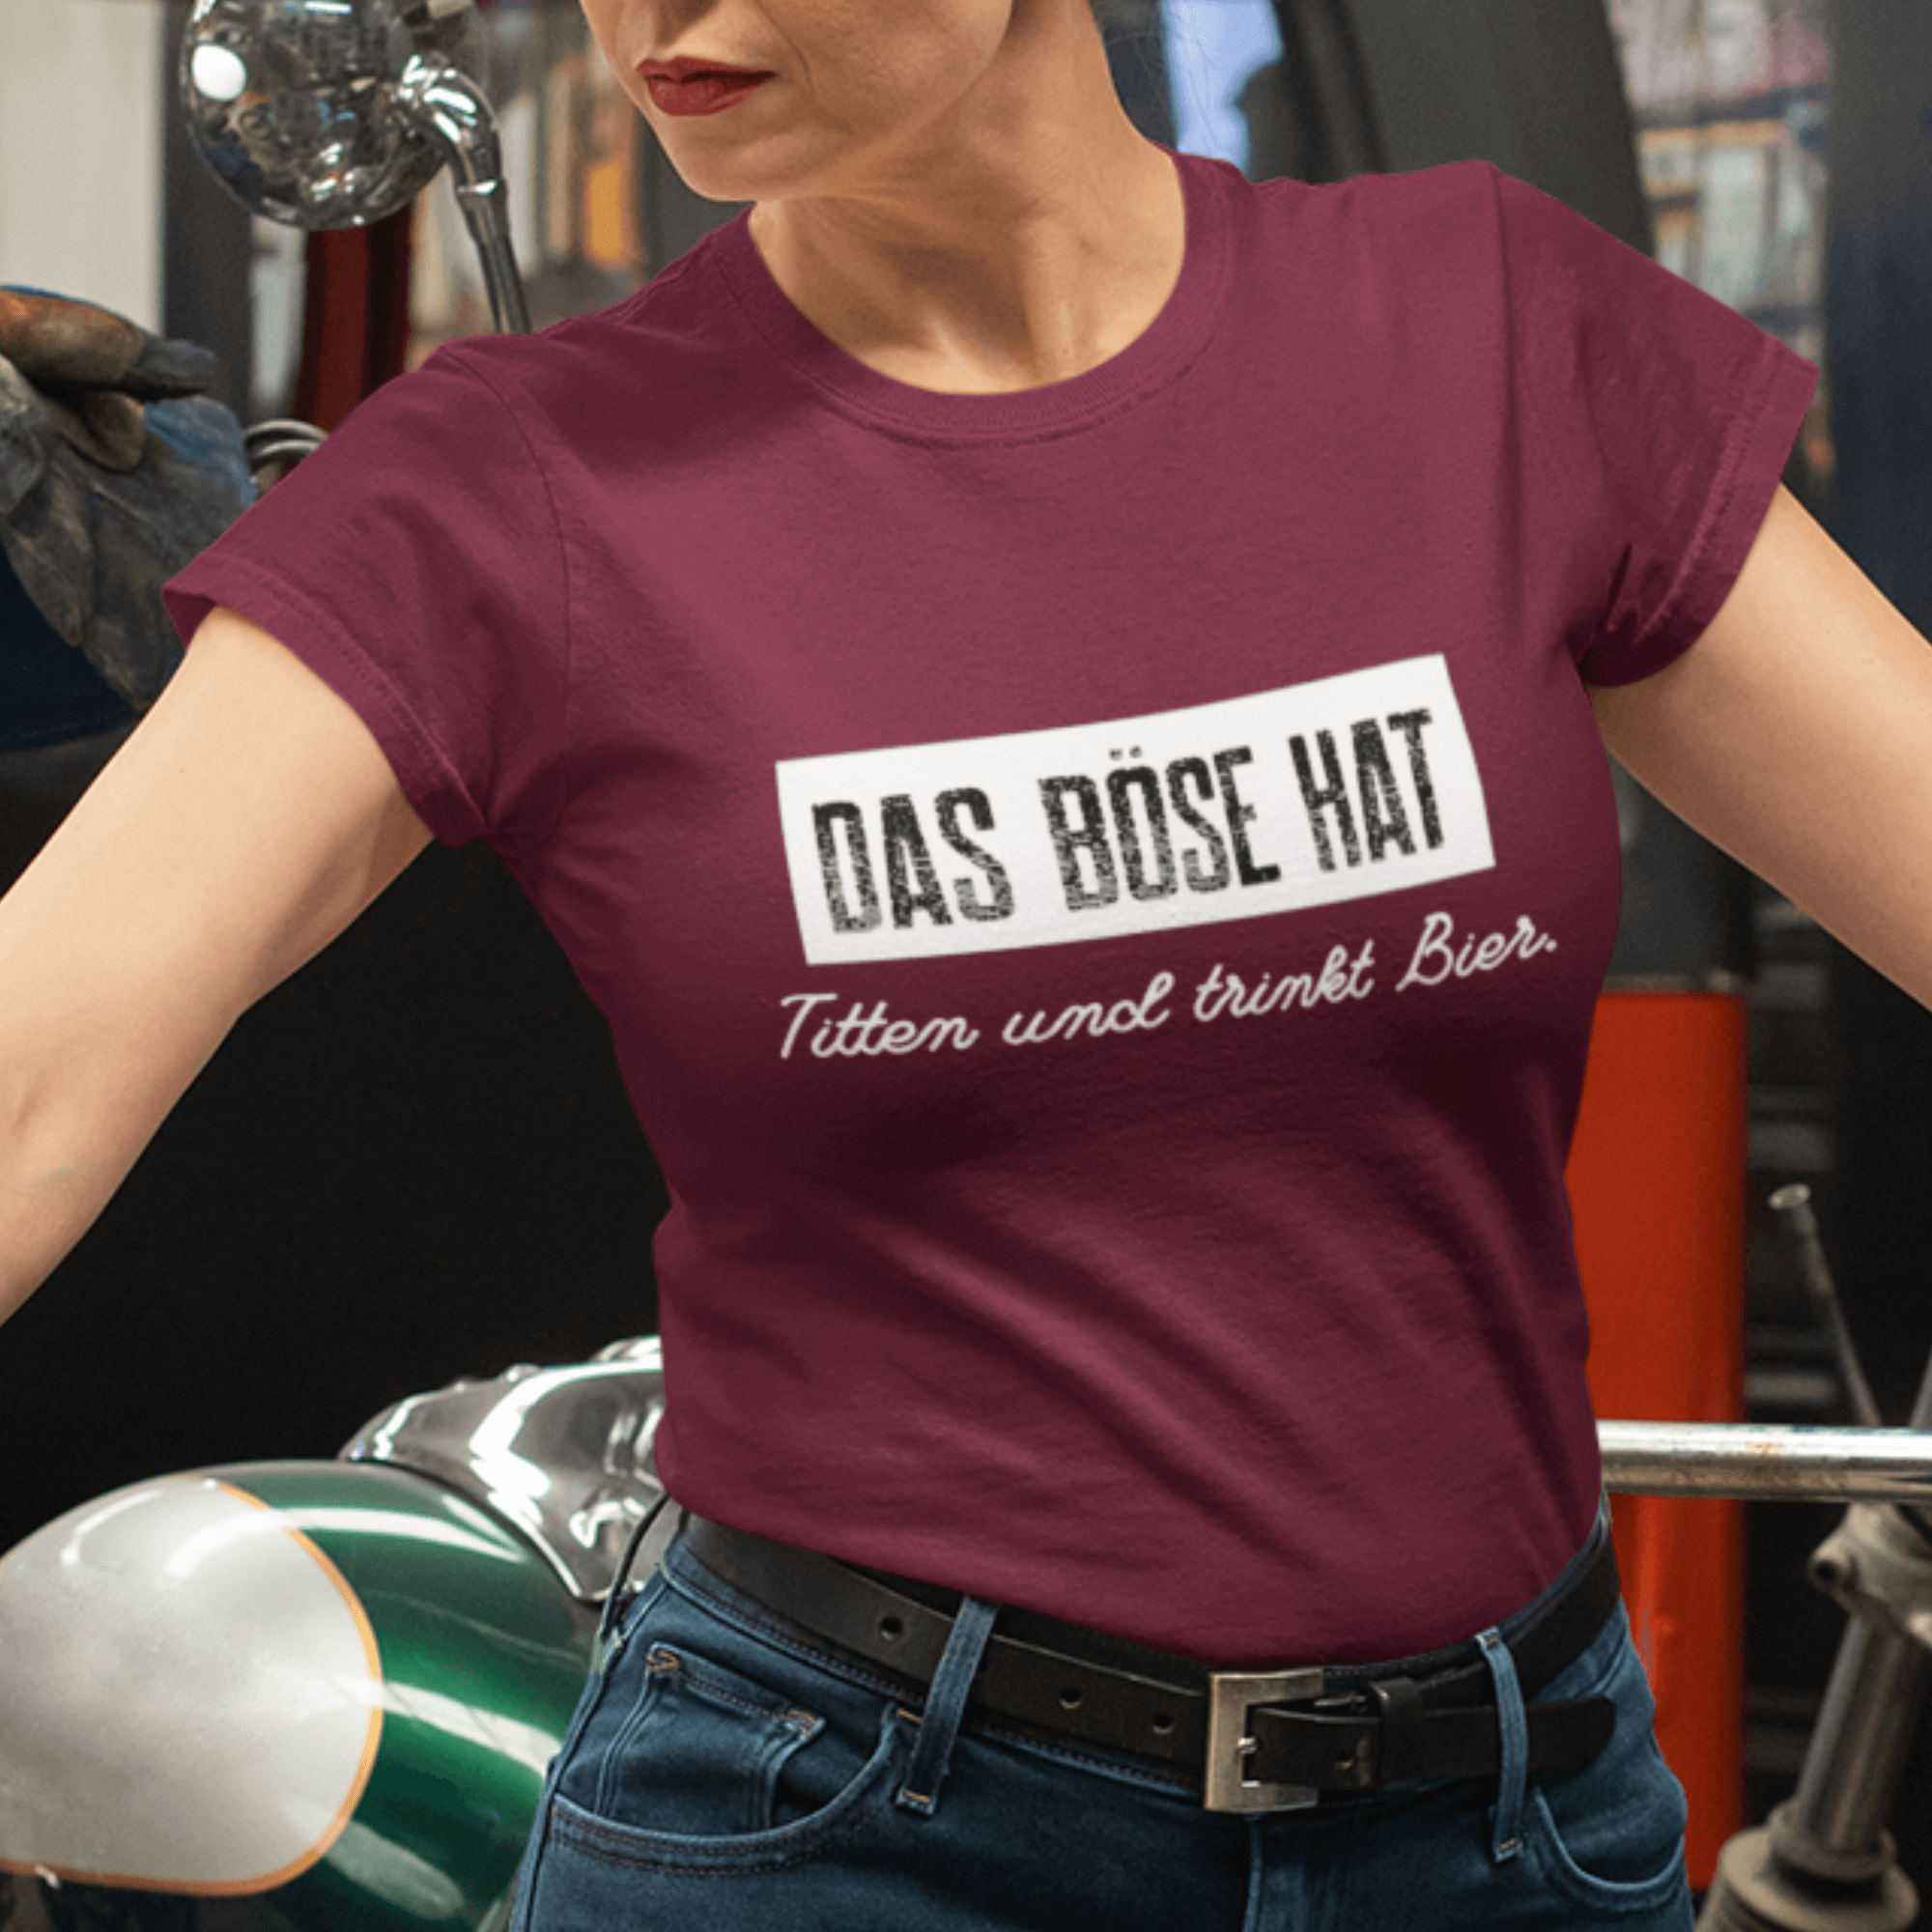 DAS BÖSE TRINKT BIER - Damen Premiumshirt - einschenken24.de